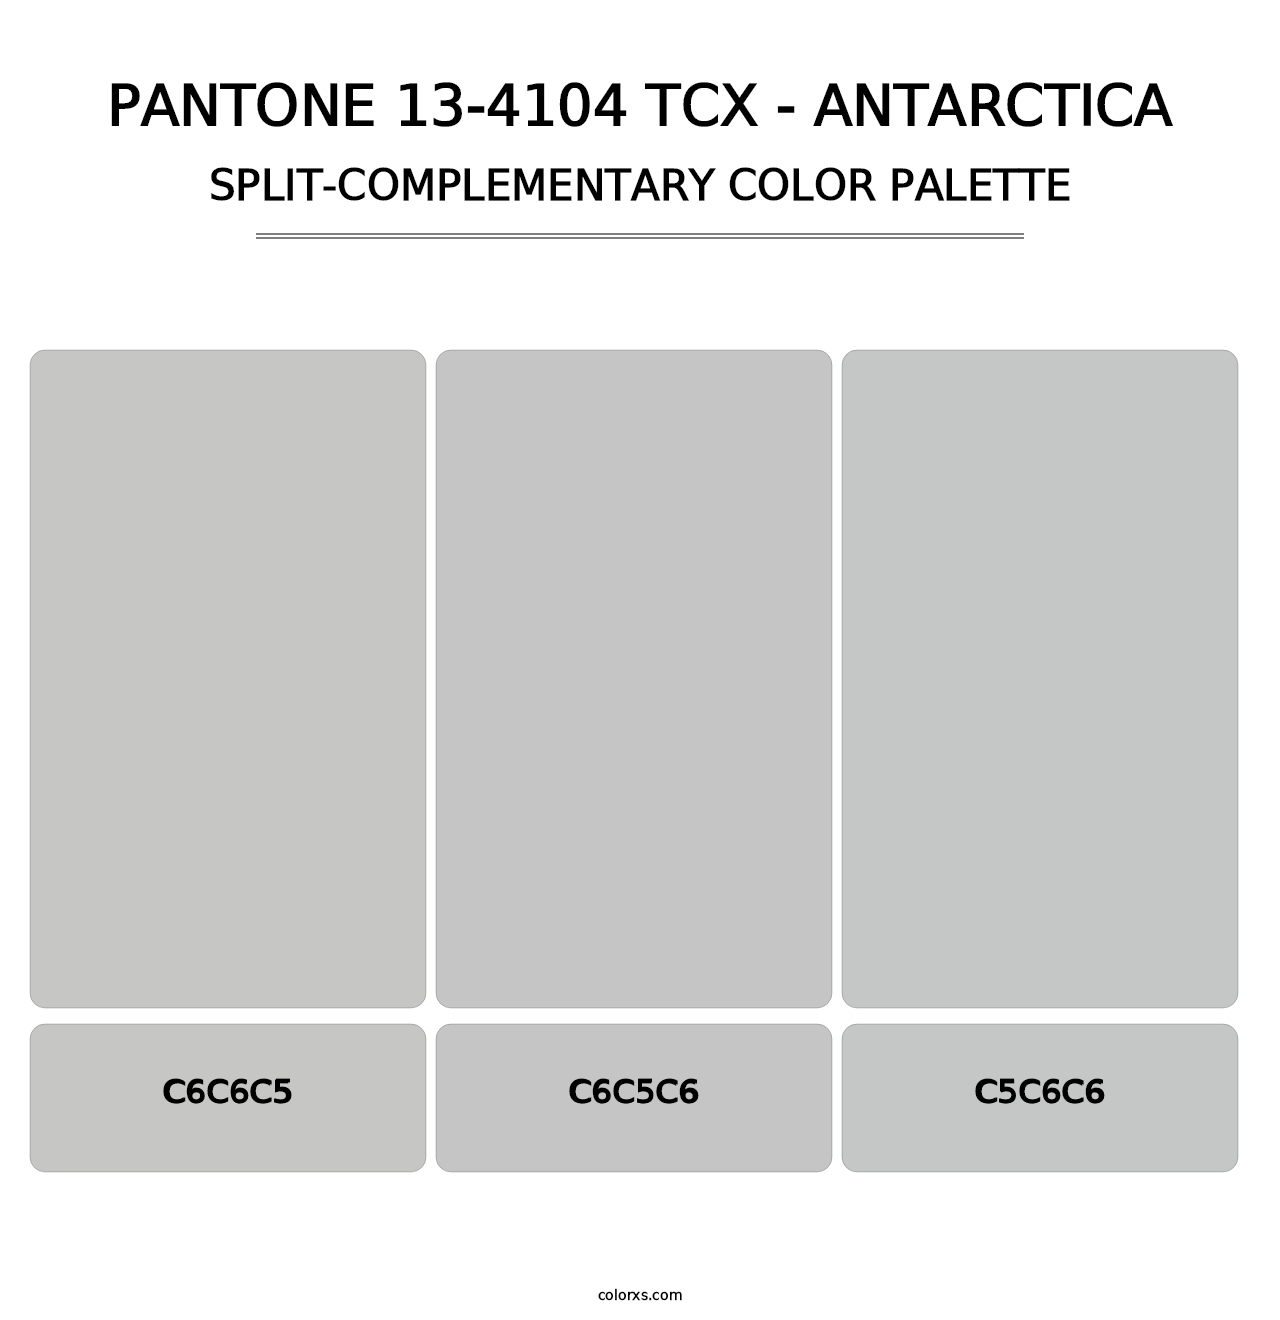 PANTONE 13-4104 TCX - Antarctica - Split-Complementary Color Palette